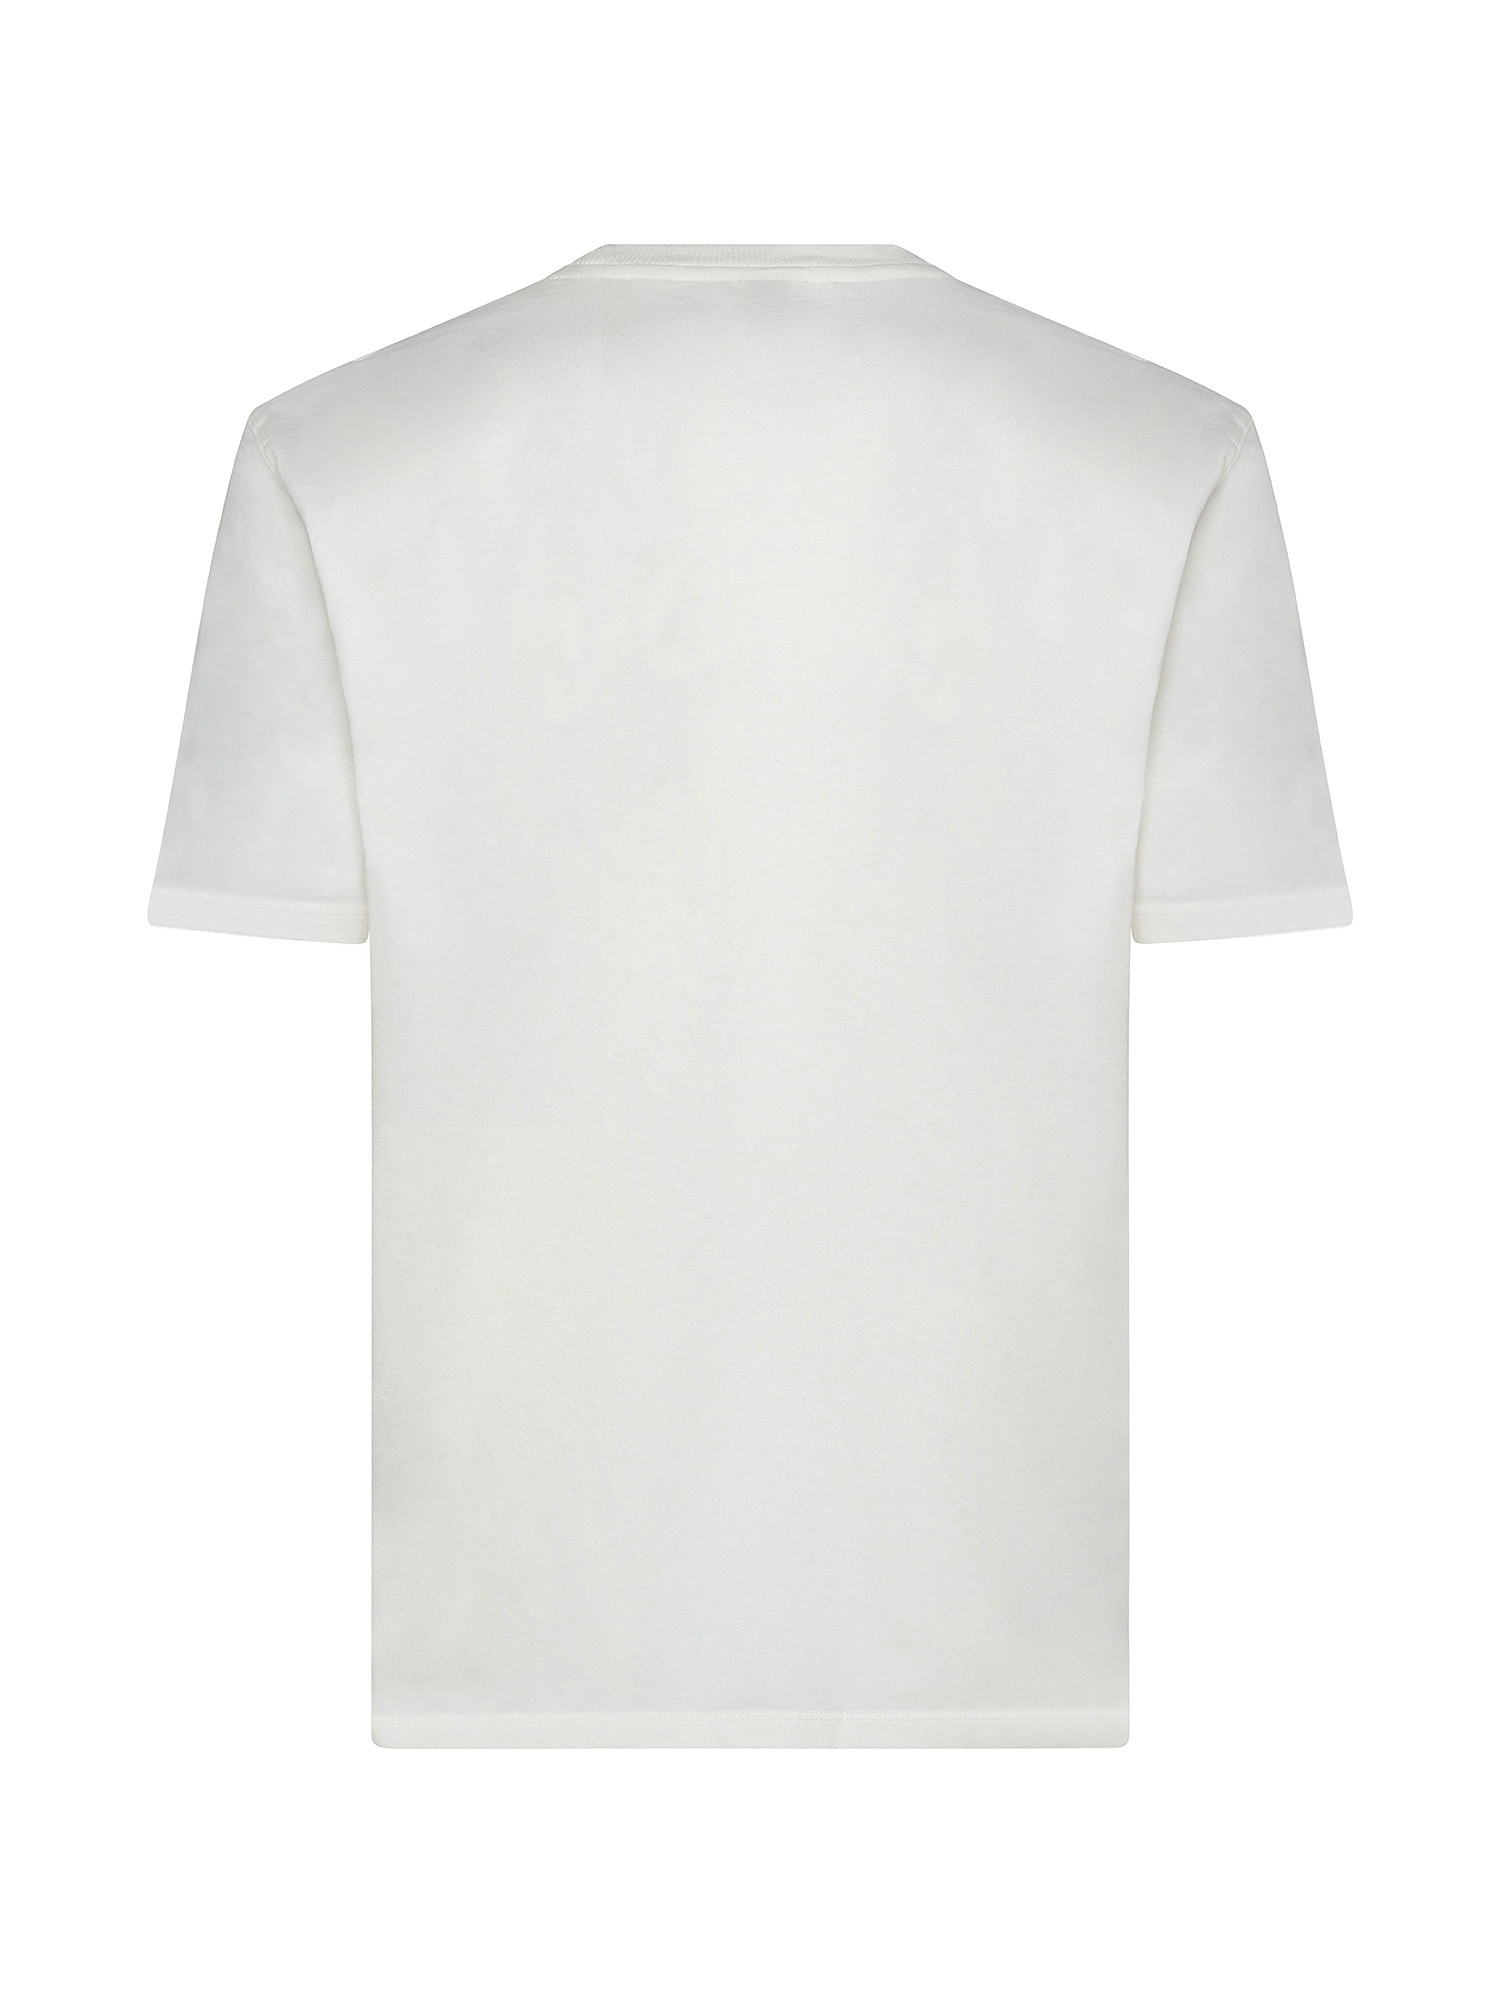 T-Shirt Baseball Ted, Bianco, large image number 1